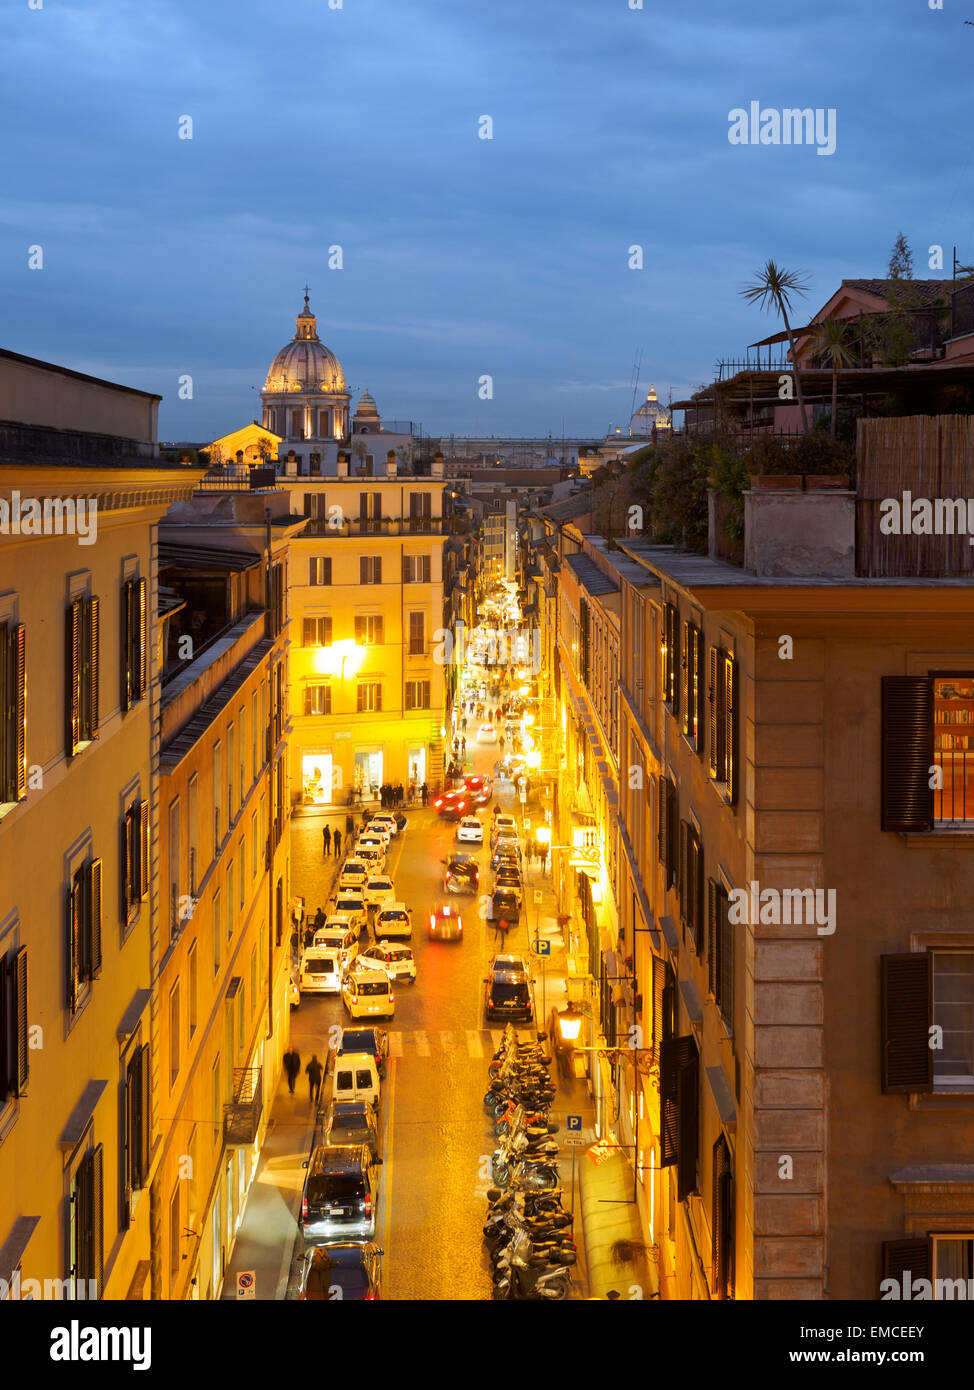 Italy, Rome, Via della Croce with San Carlo al Corso church Stock Photo